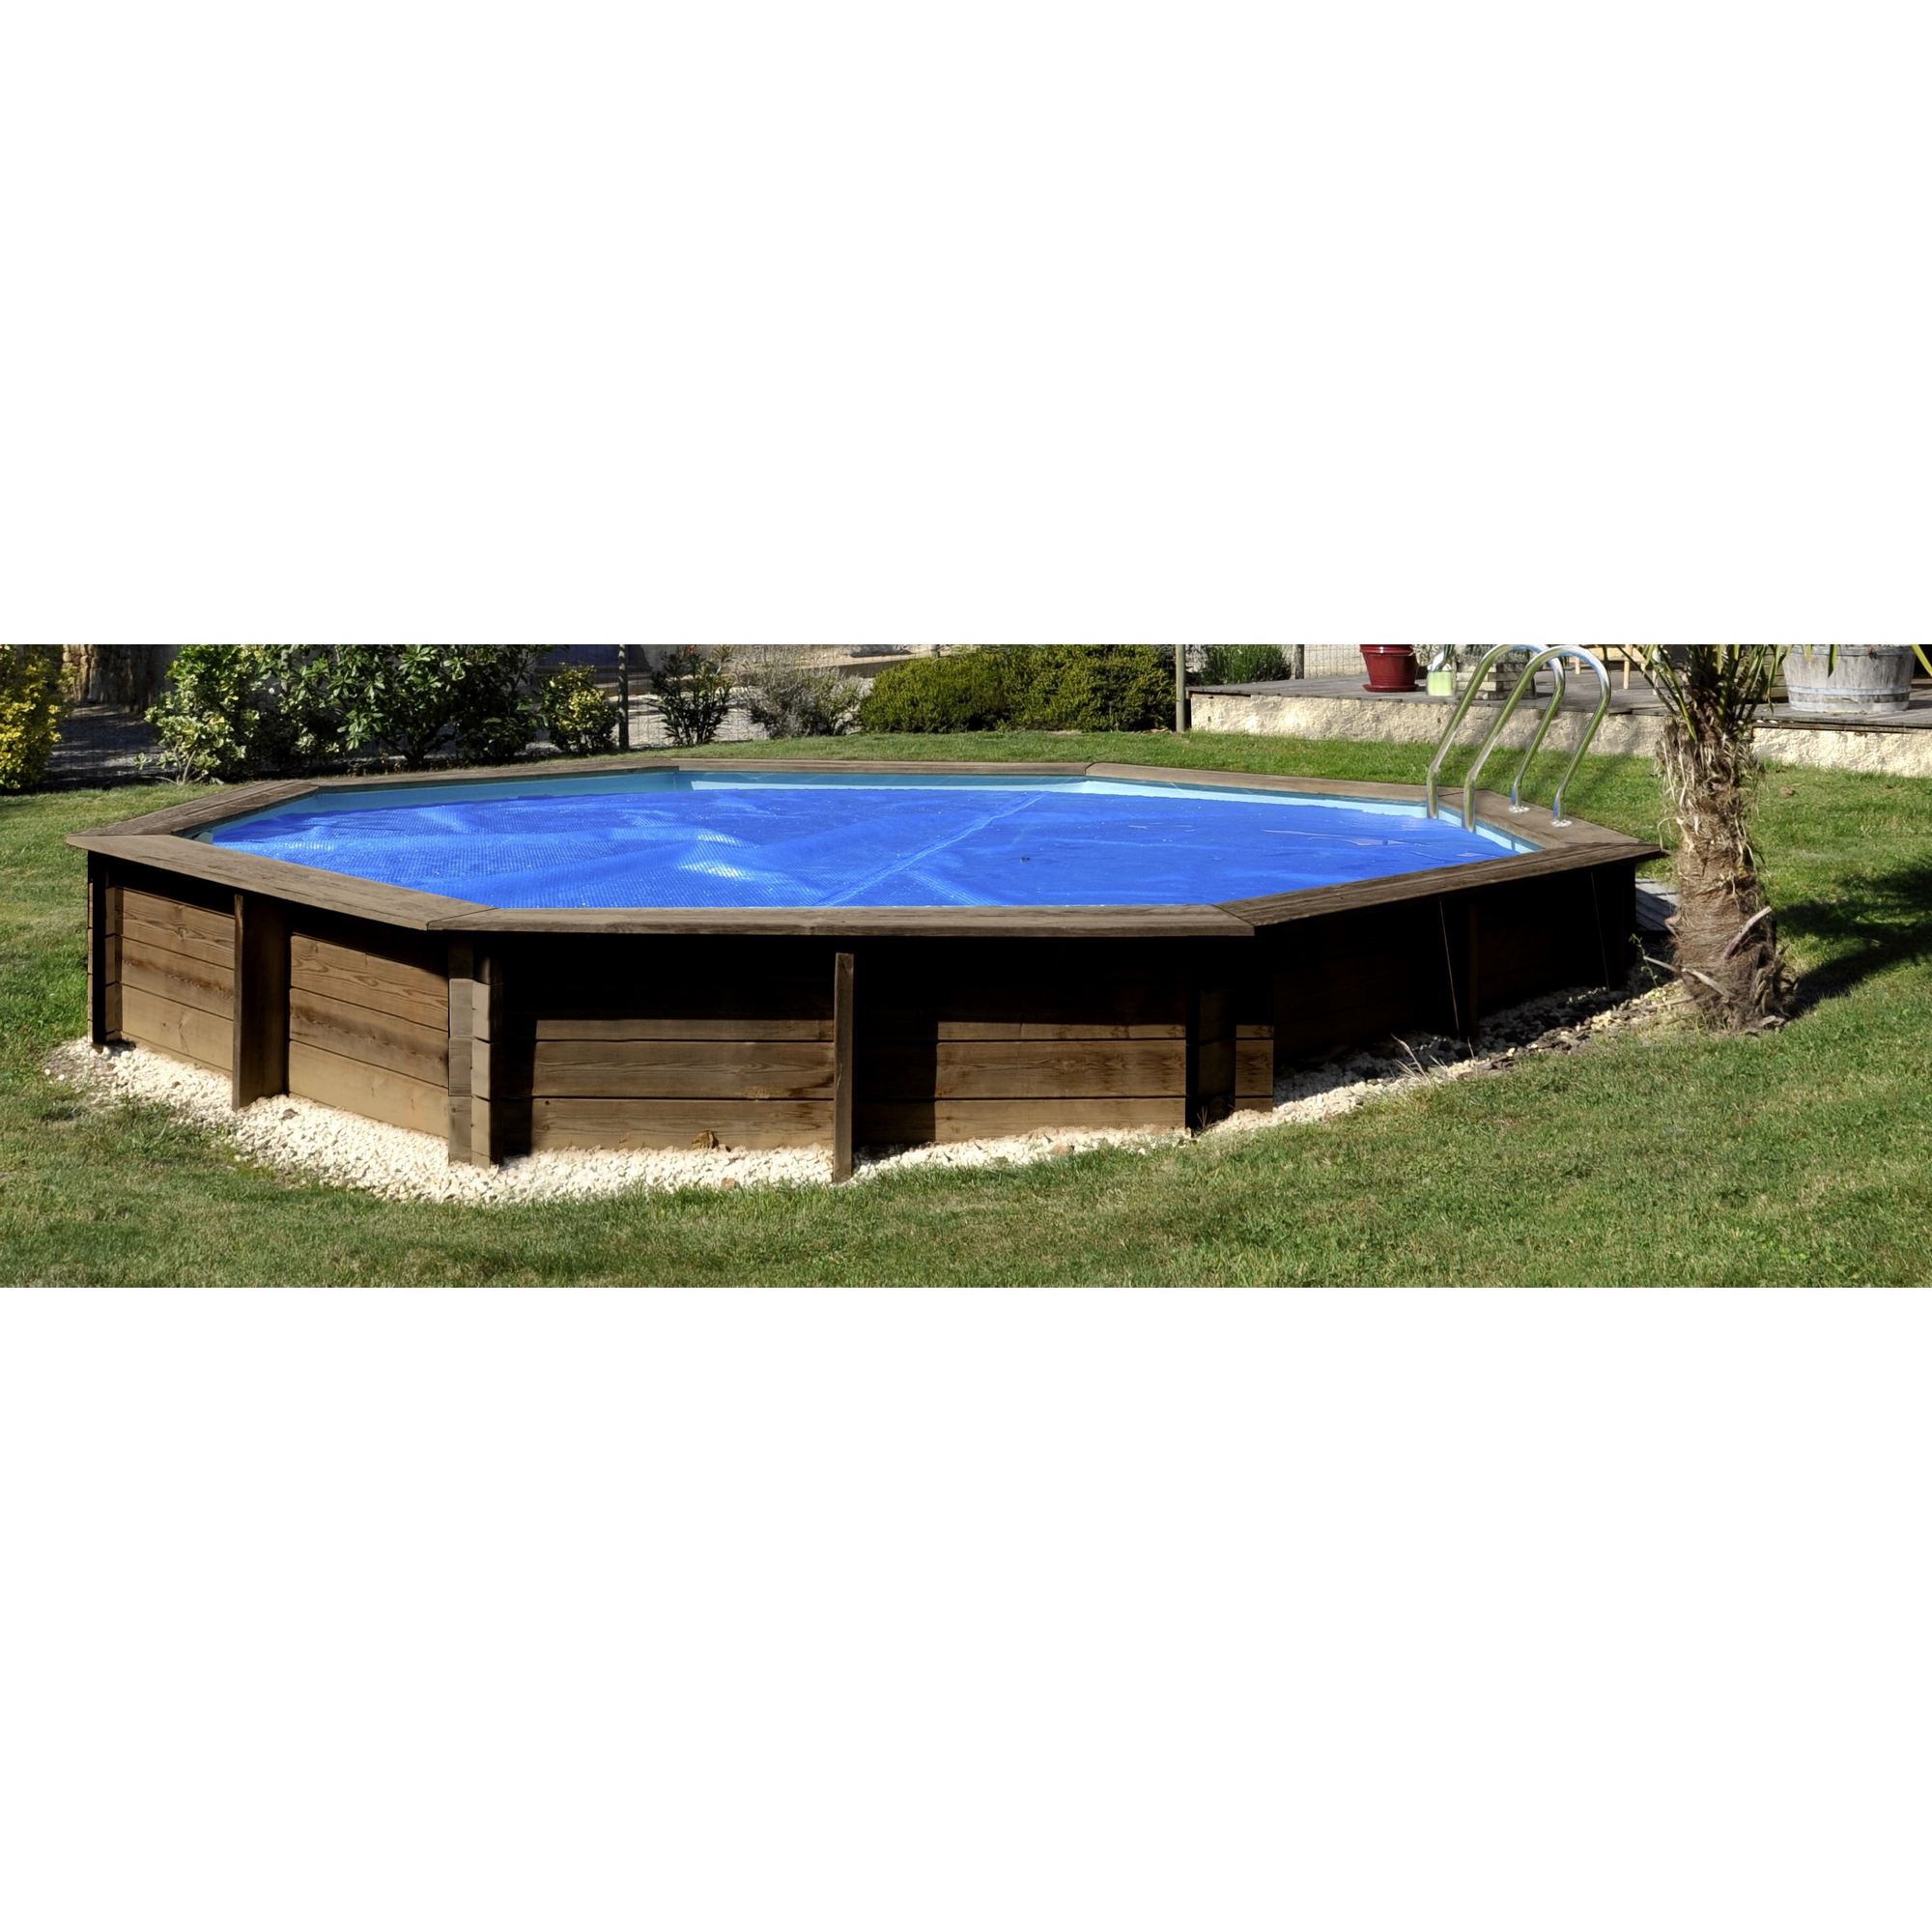 Sommerabdeckplane für Pool 'Safran' blau 585 x 360 cm + product picture